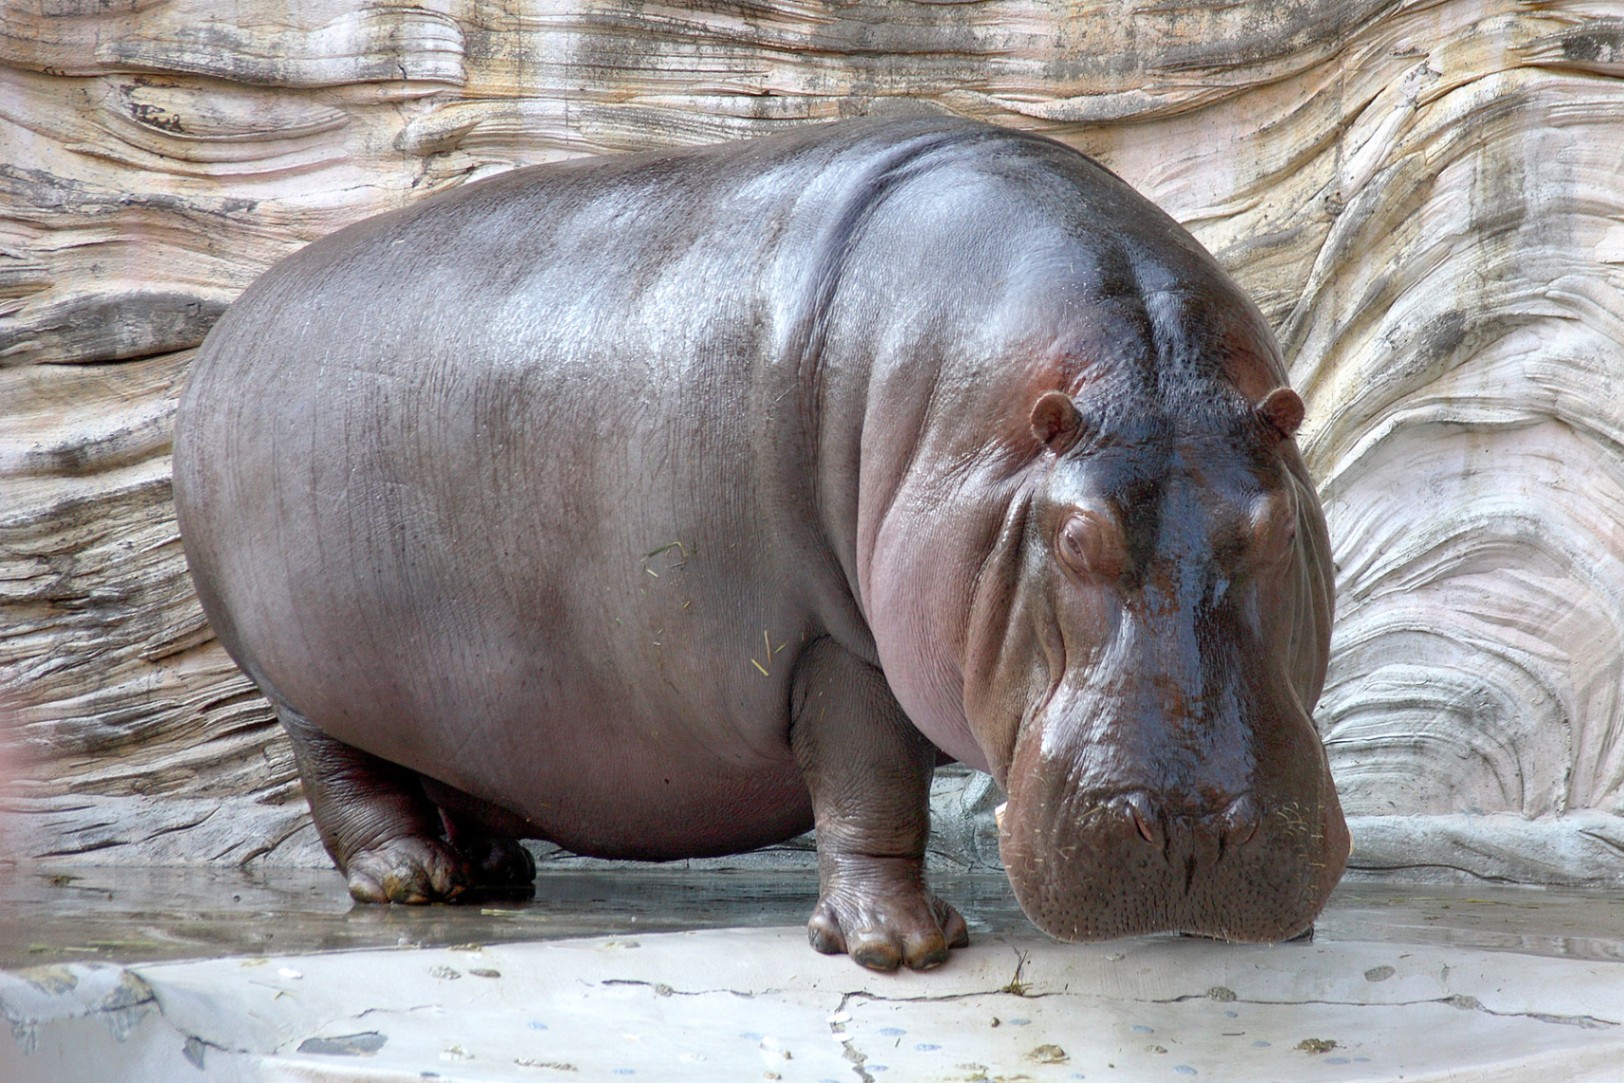 Descubra alguns fatos curiosos sobre os hipopótamos